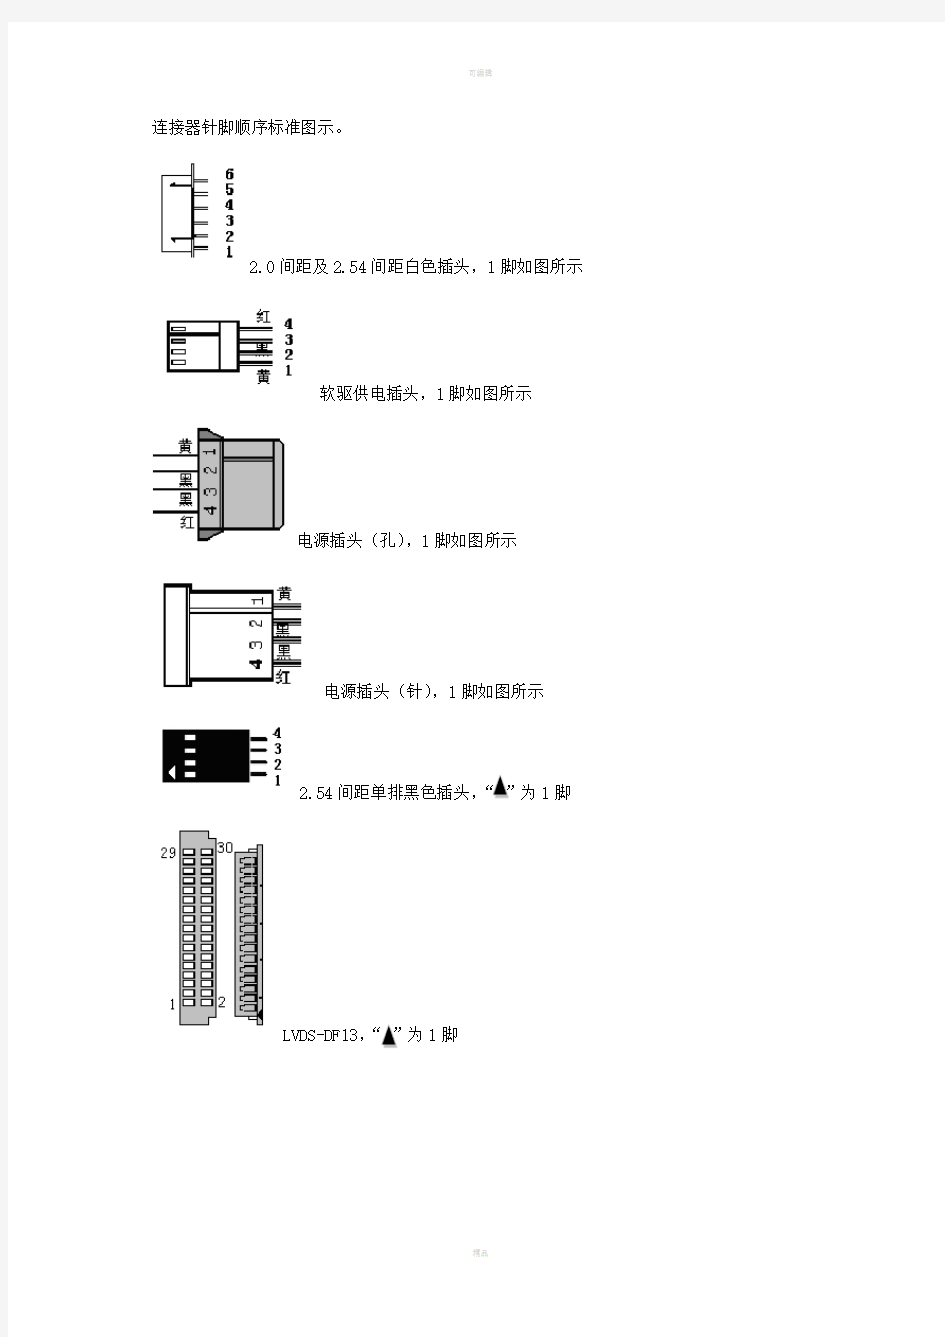 连接器针脚顺序标准图示